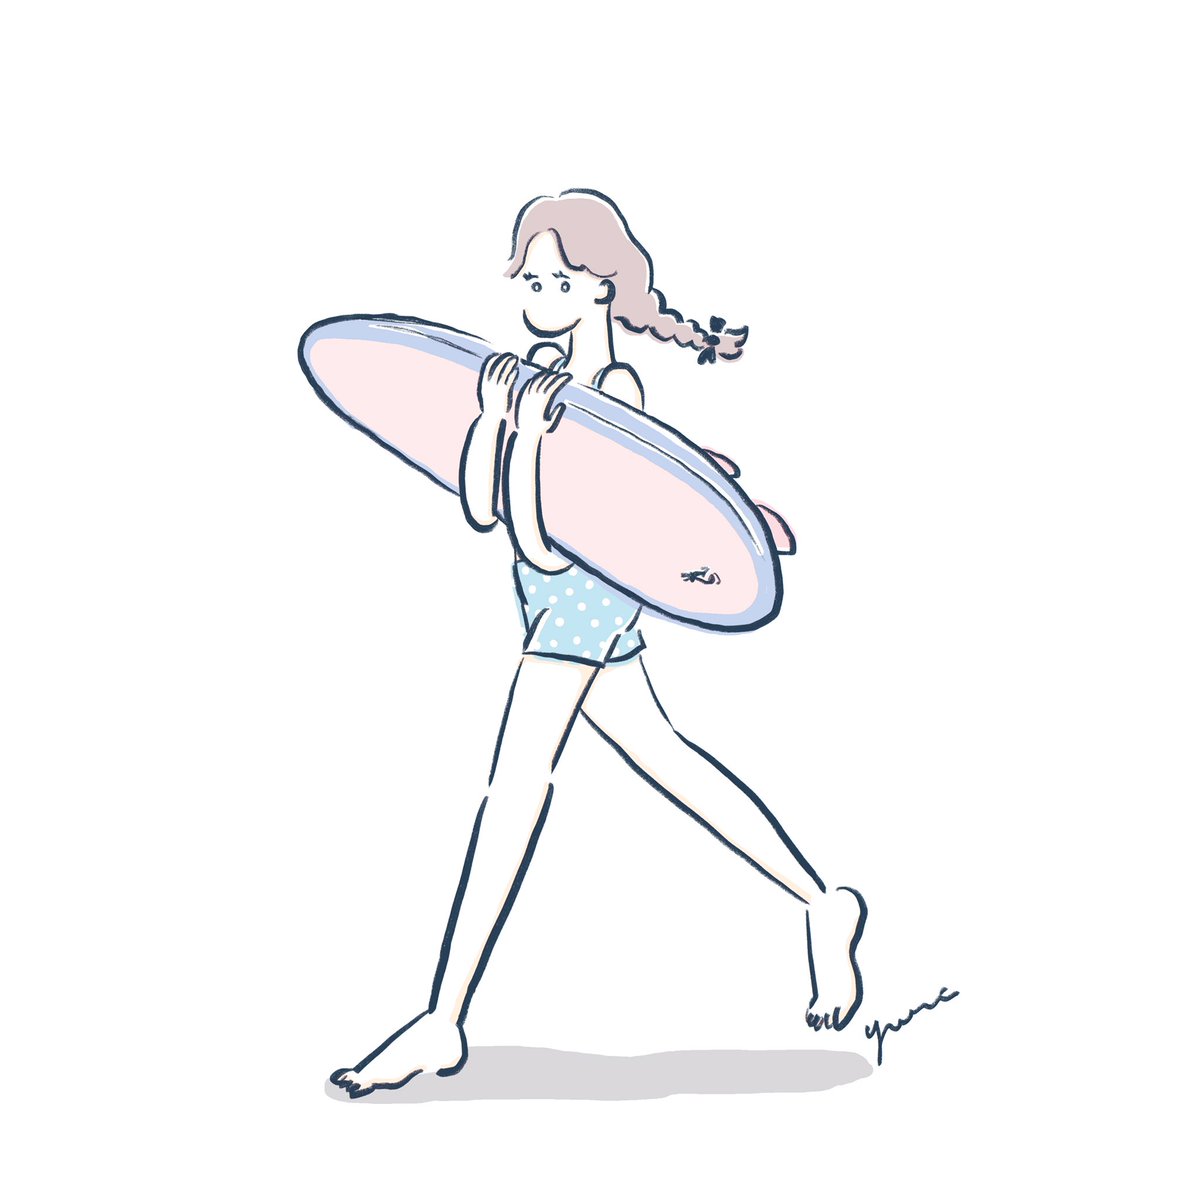 まつもとゆり Twitterissa サーフボードを持って歩く女の子をいろいろ描いたので少しずつ載せていきます その5 Adobefresco Surfillustration Surfer Surffashion Surfergirl Surf Sea Girlsillustration ガールズイラスト イラスト サーフガール